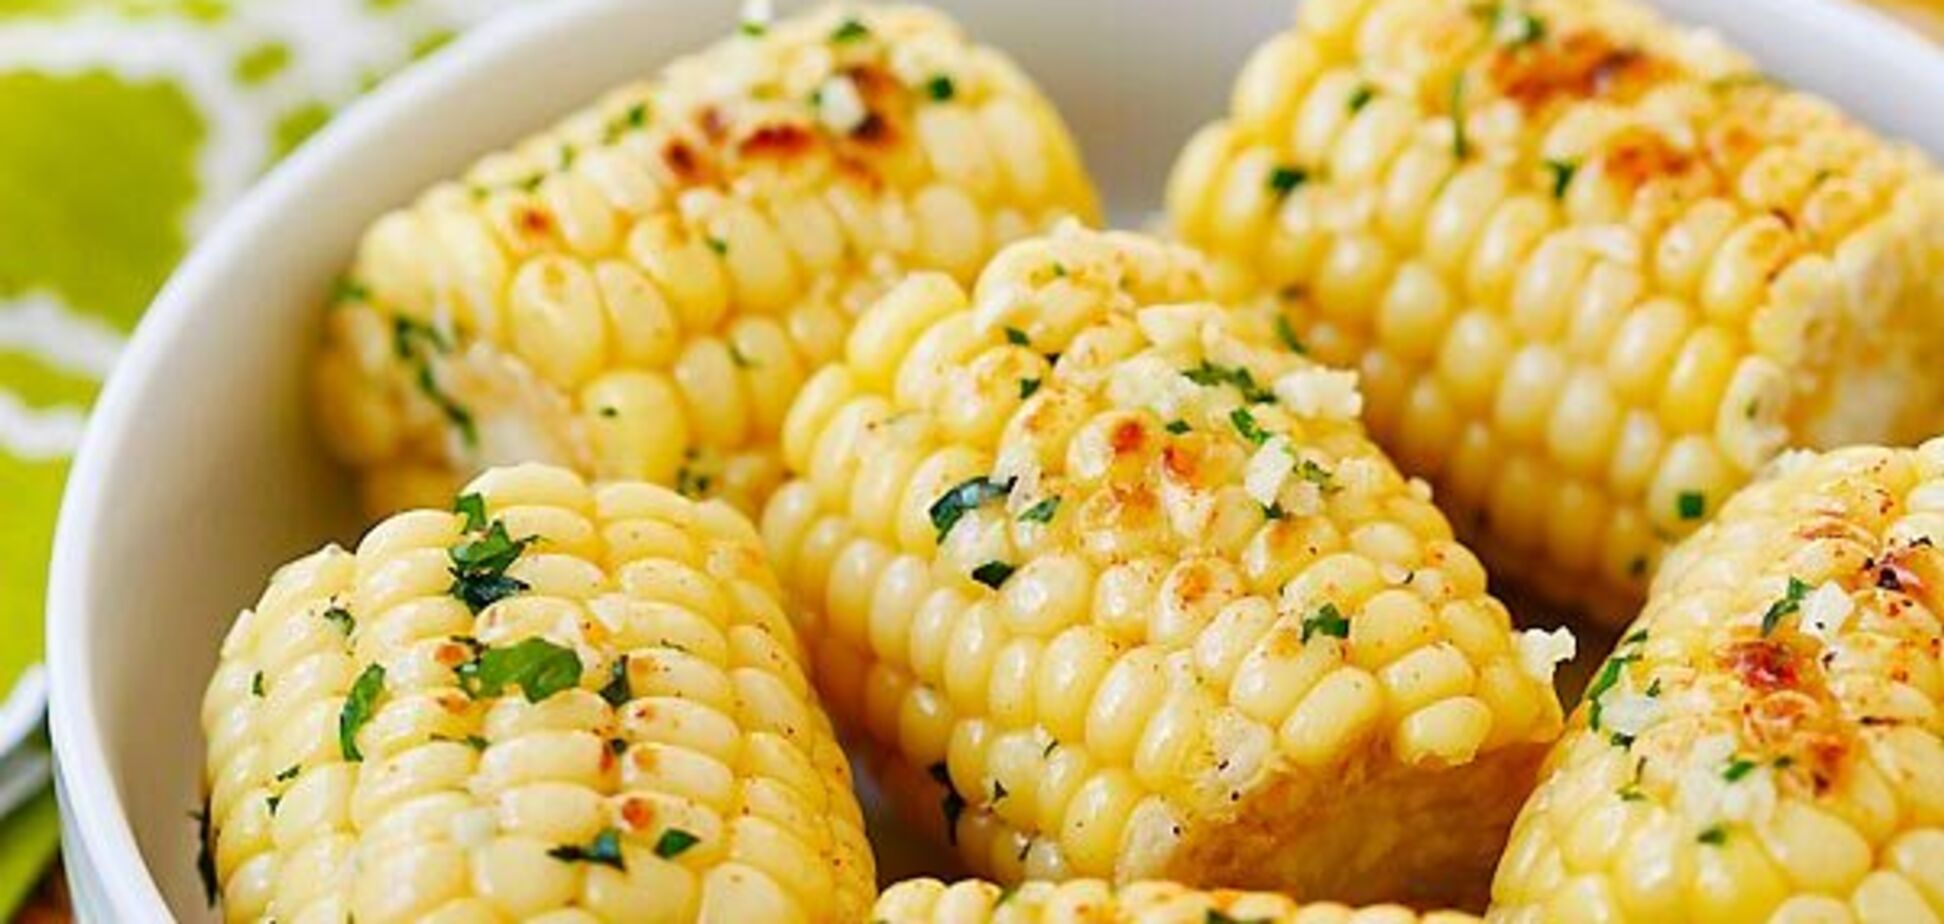 Как вкусно приготовить кукурузу: отваривать не нужно